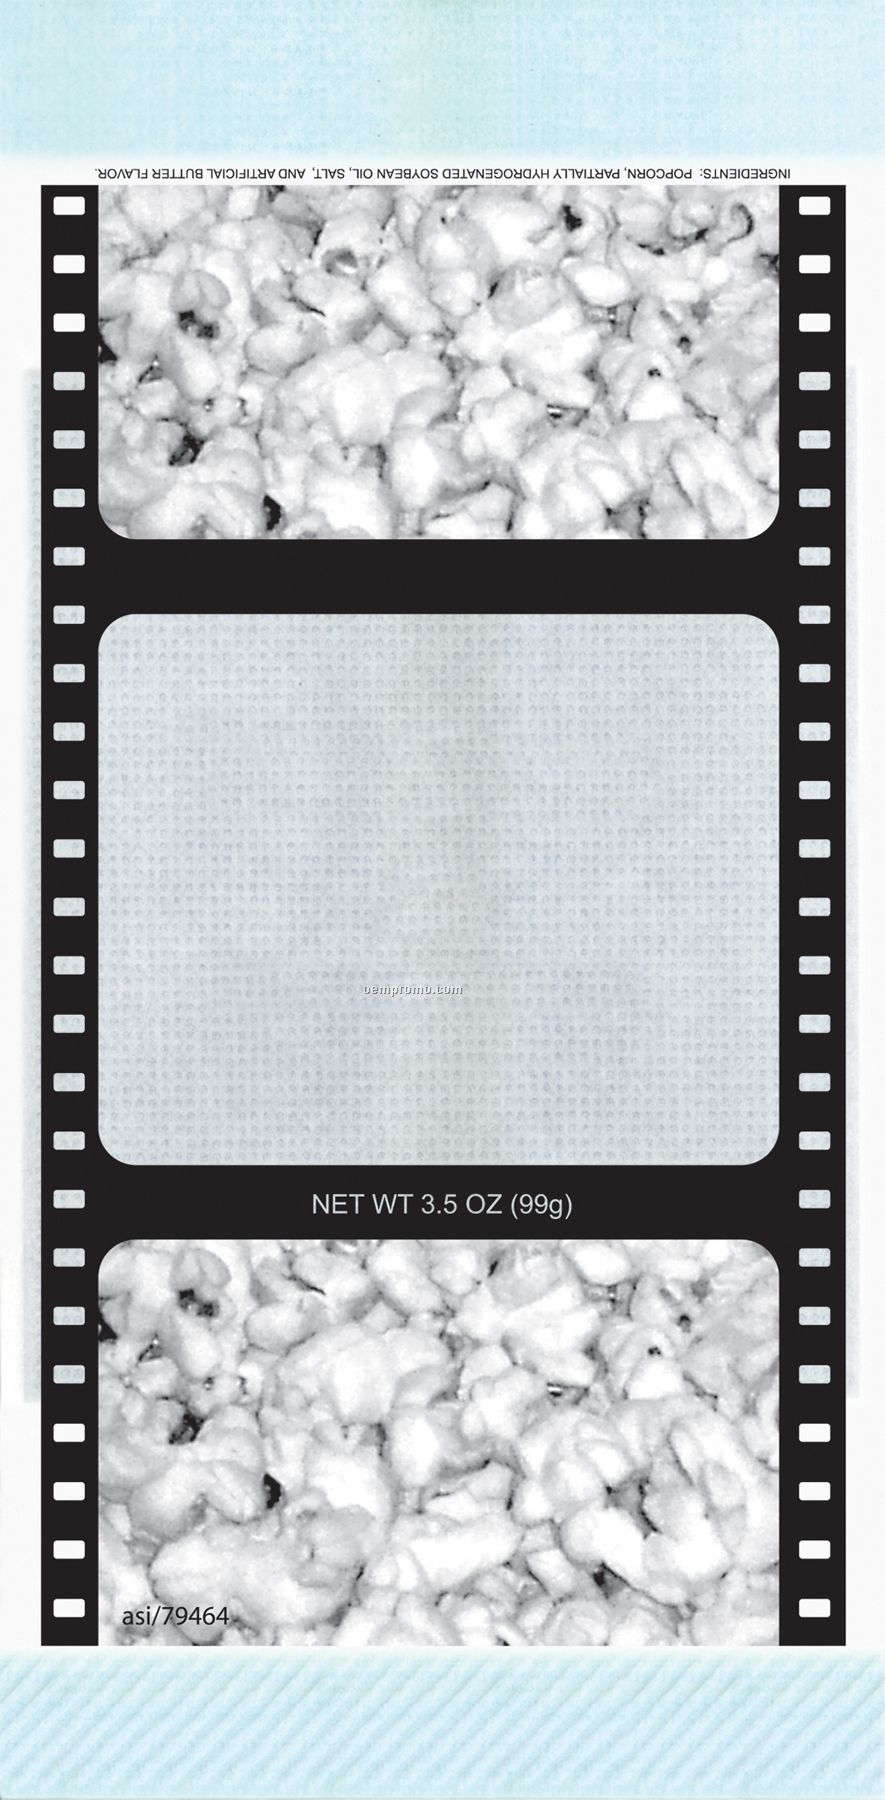 2 Color Pre-designed Microwave Popcorn Bag (Popcorn/Movie Reel)